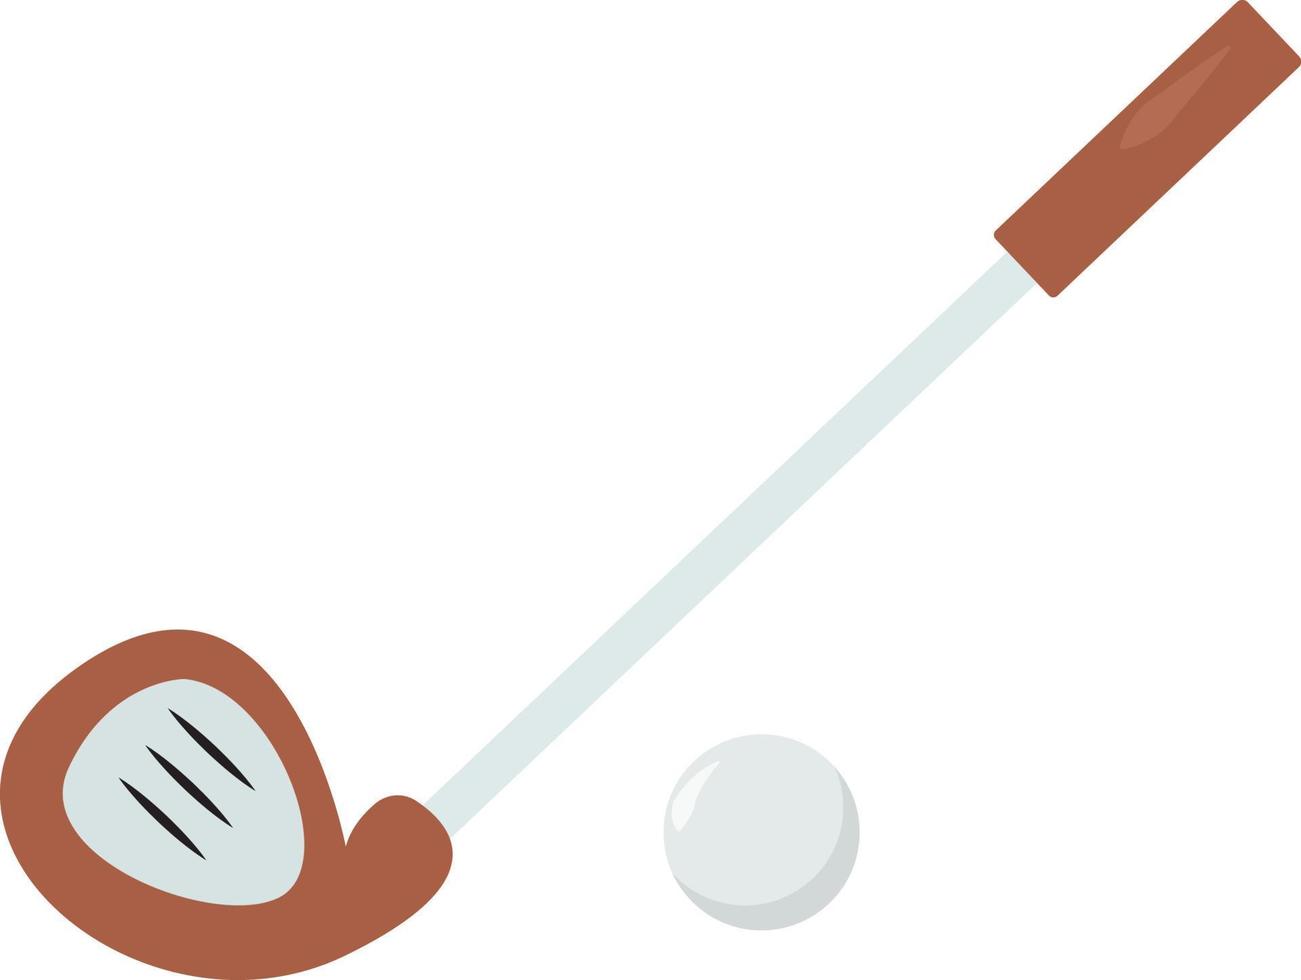 Golfschläger, Illustration, Vektor auf weißem Hintergrund.